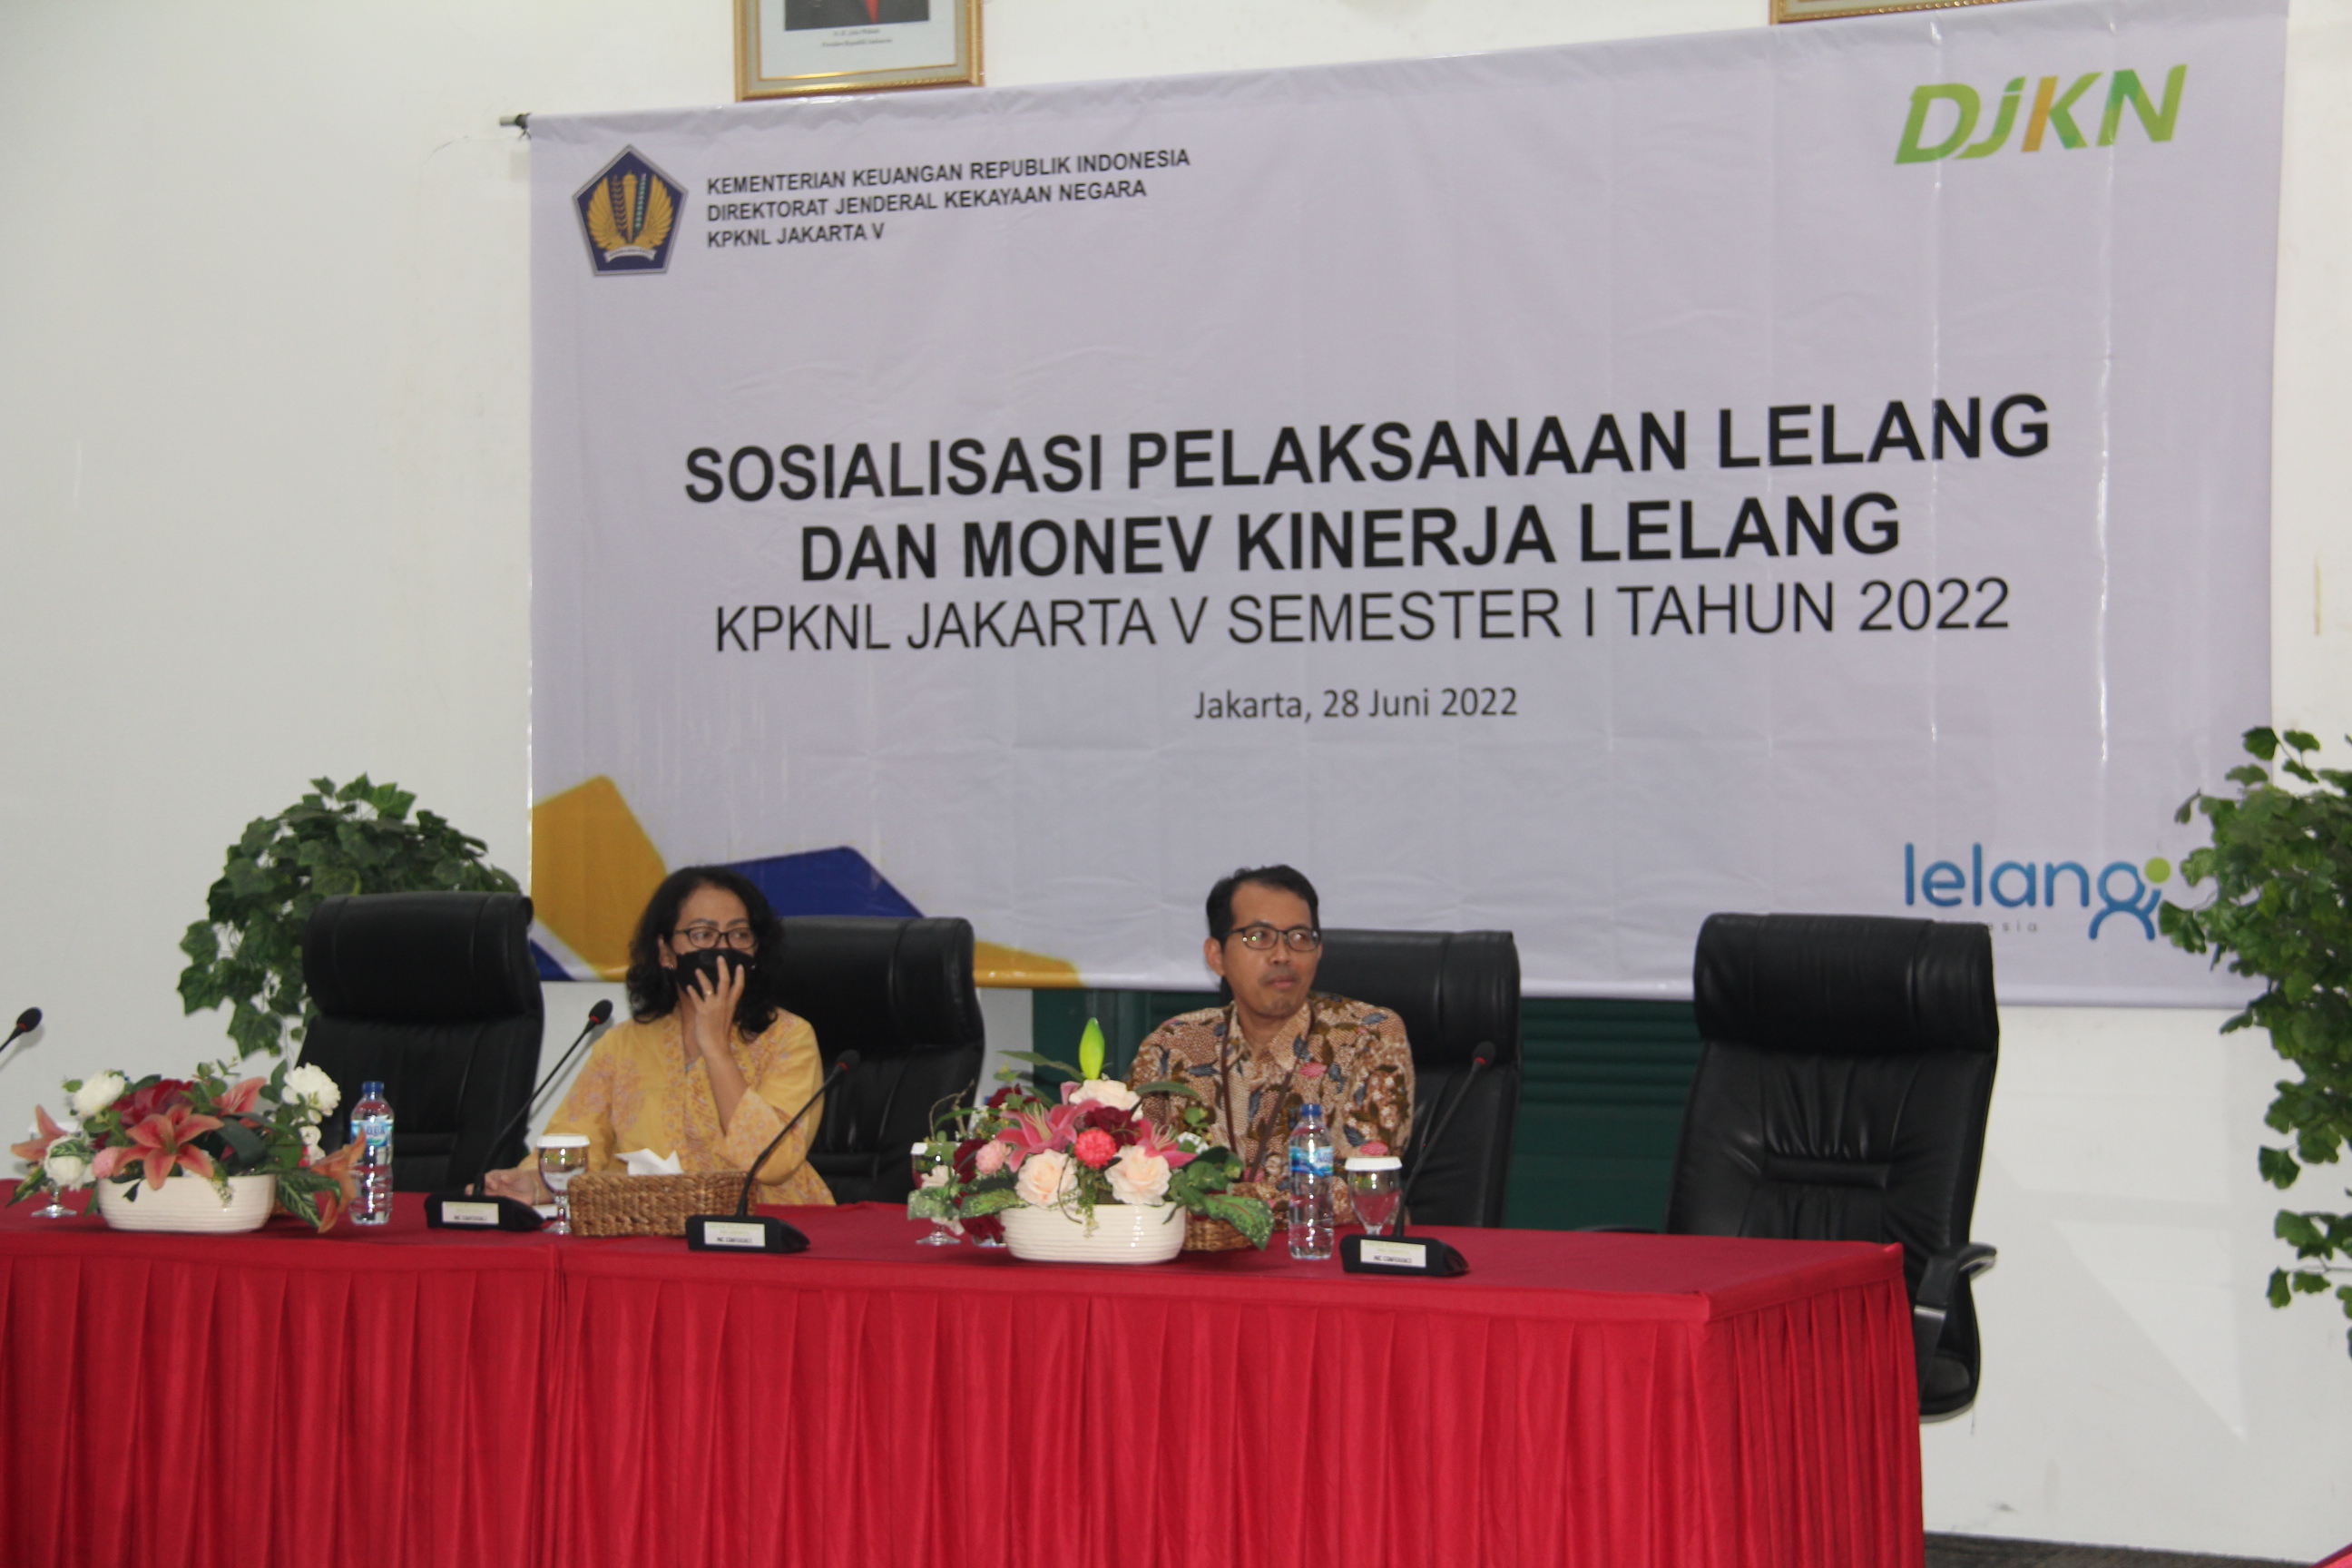 Sosialisasi Pelaksanaan Lelang dan Monev Kinerja Lelang Pada KPKNL Jakarta V Semester I Tahun 2022